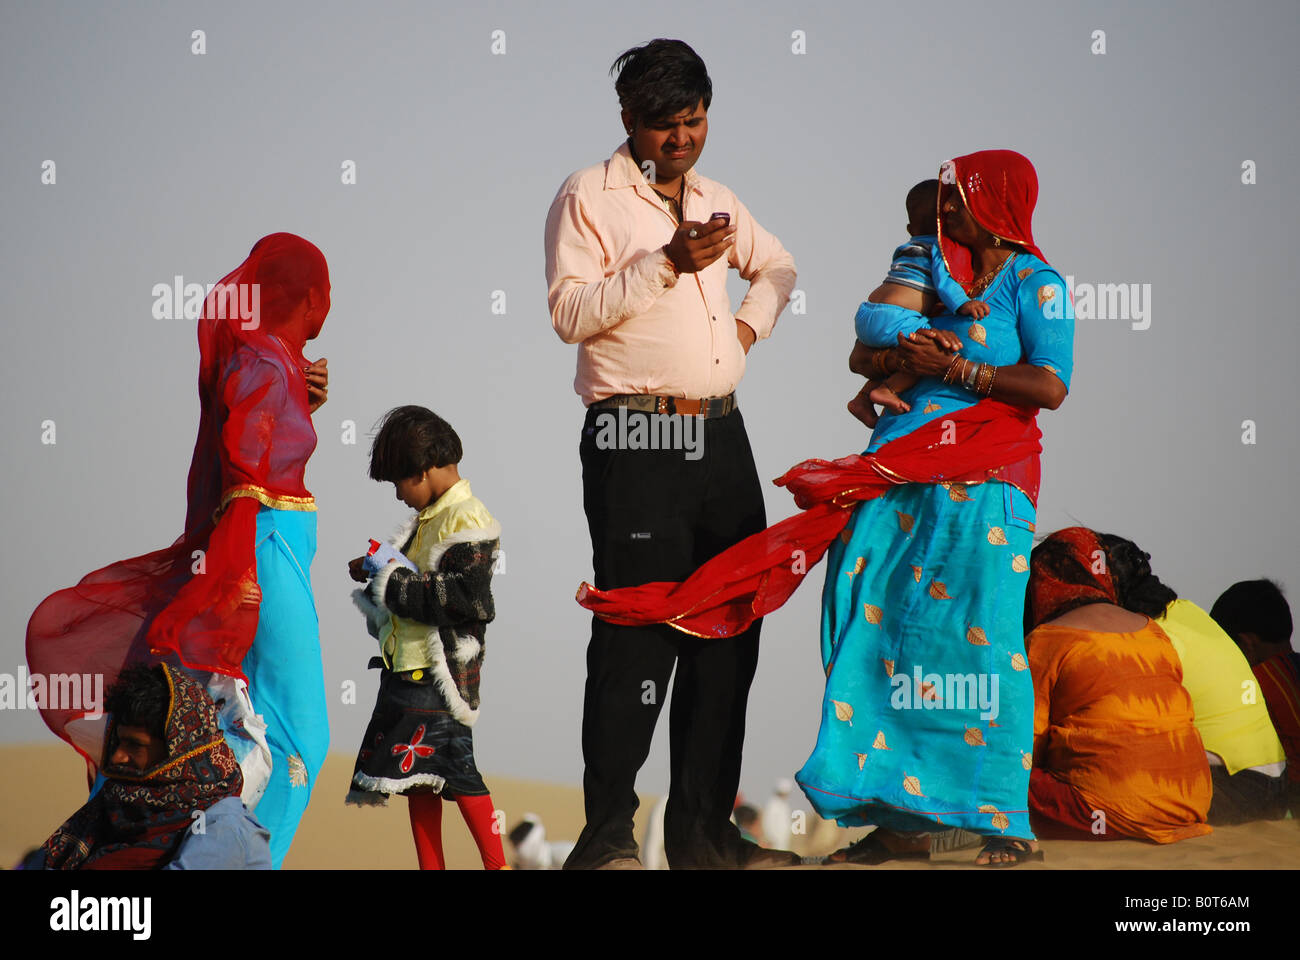 Un hombre de origen indio en ropa moderna comprueba su teléfono móvil rodeado de mujeres en prendas tradicionales en el Camel Festival en Th Foto de stock